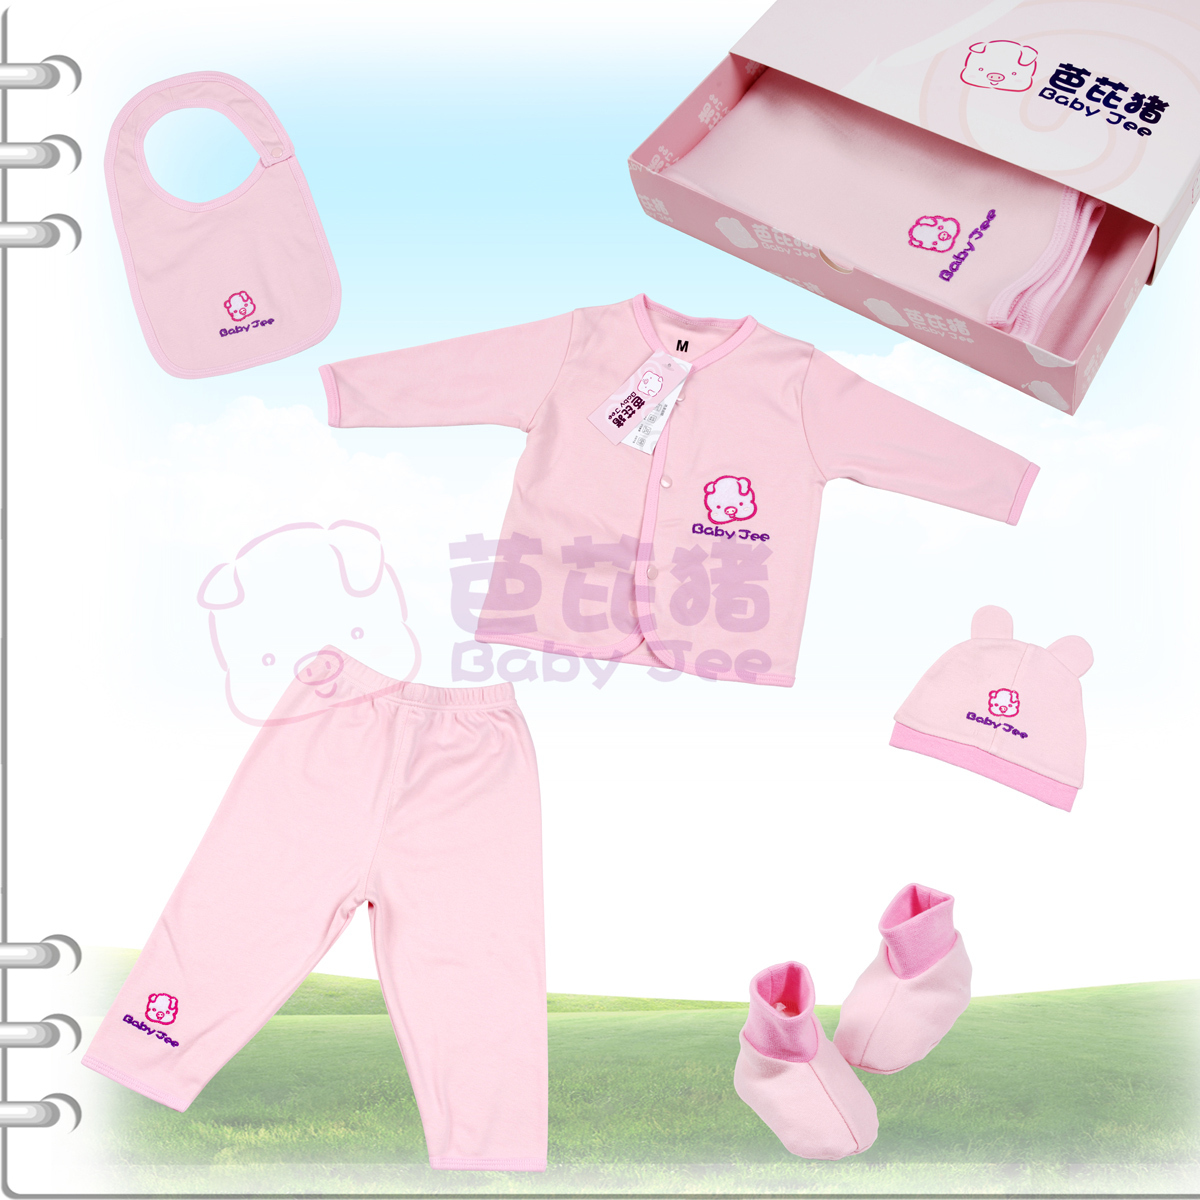 【芭芘猪】婴儿服装 100%纯棉粉红色五件套礼盒装 婴儿用品 童装